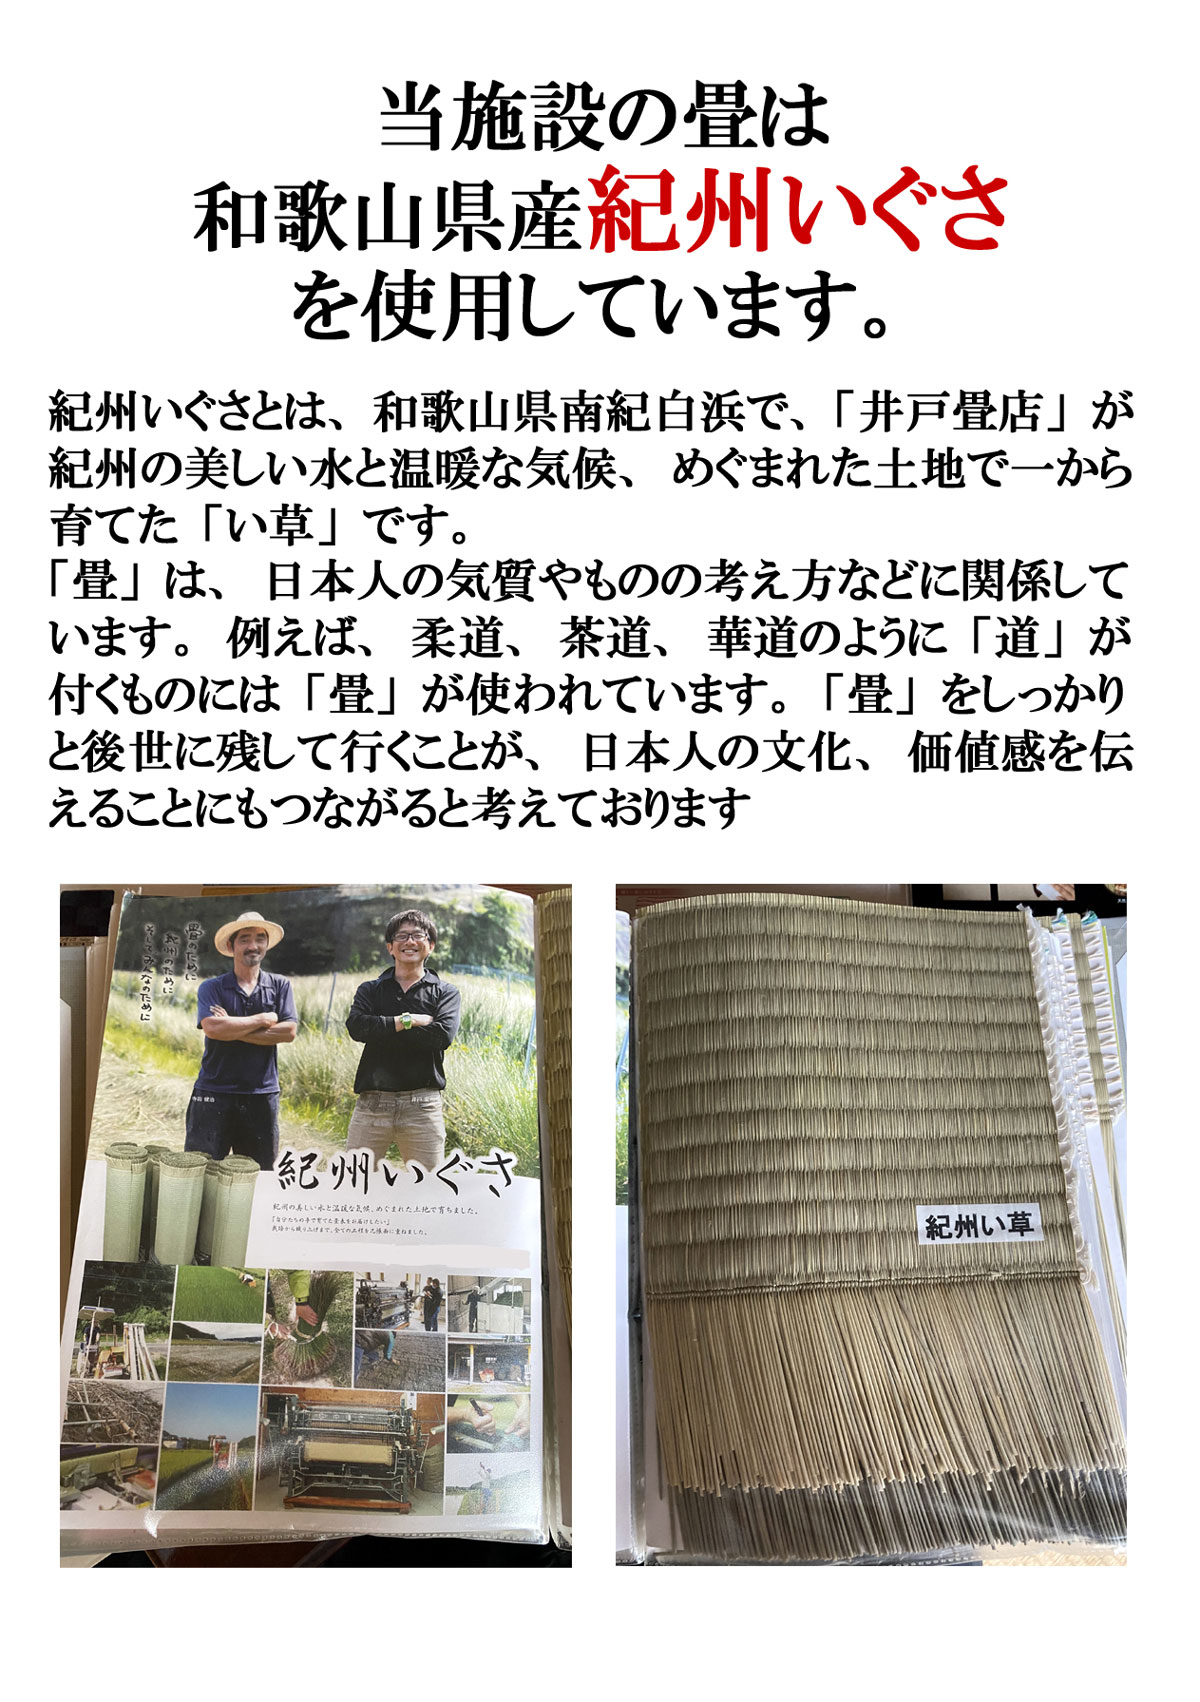 当施設の畳は和歌山県産紀州いぐさを使用しています。